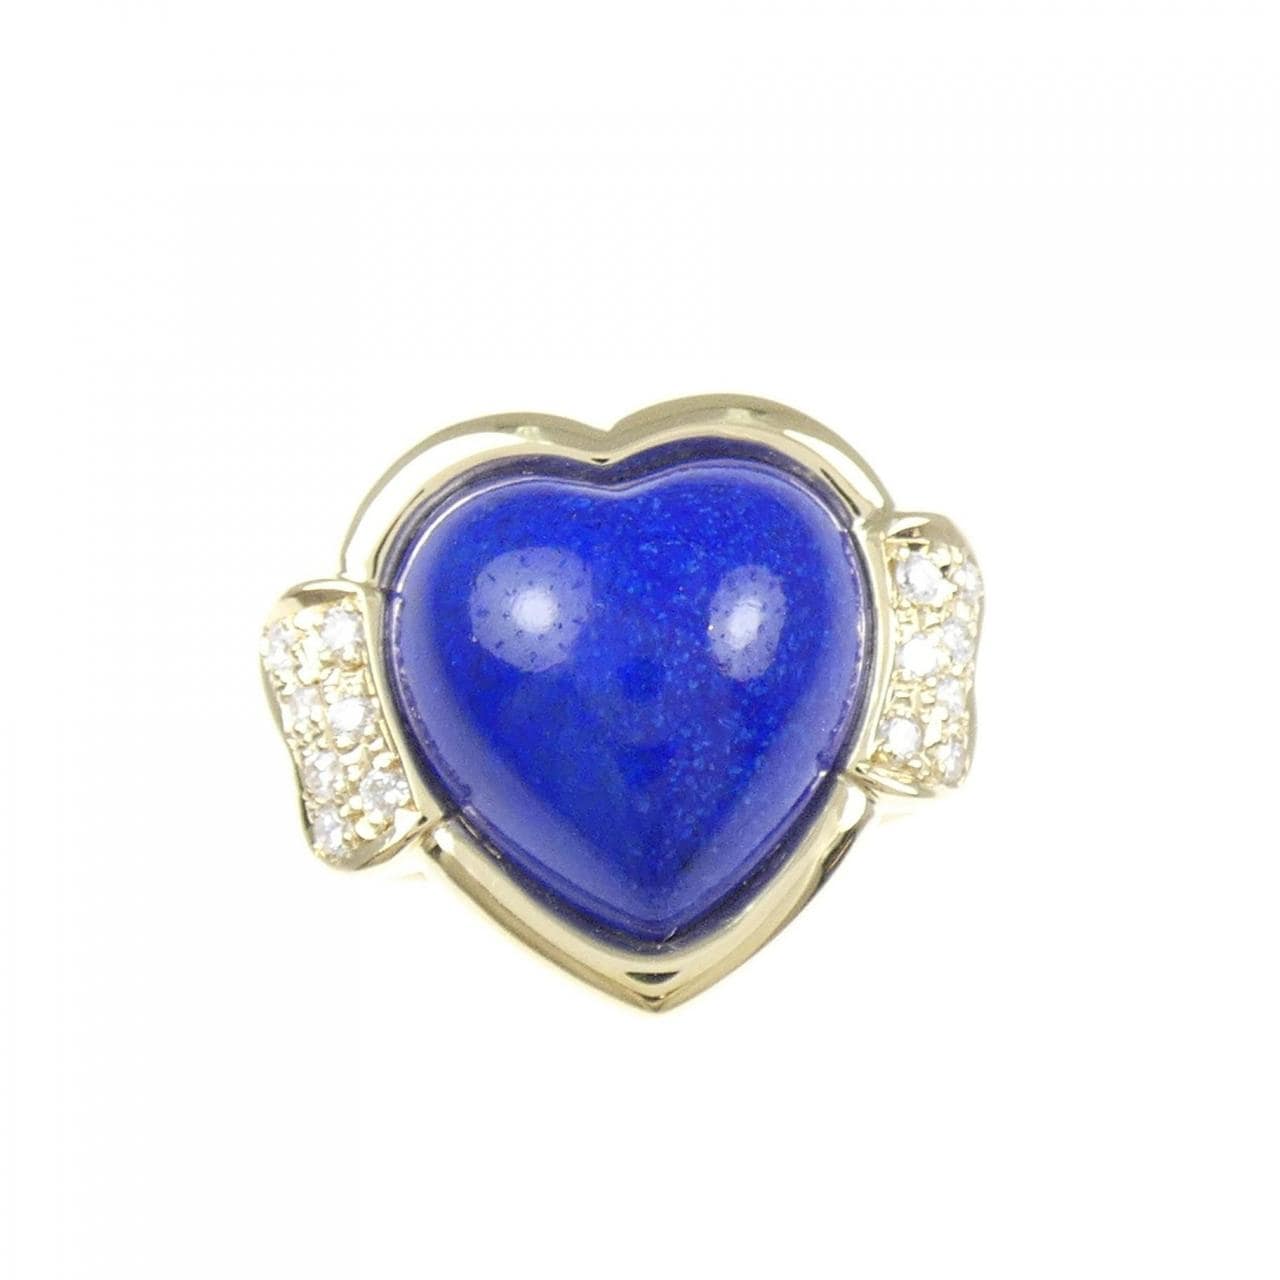 K18YG heart lapis lazuli ring